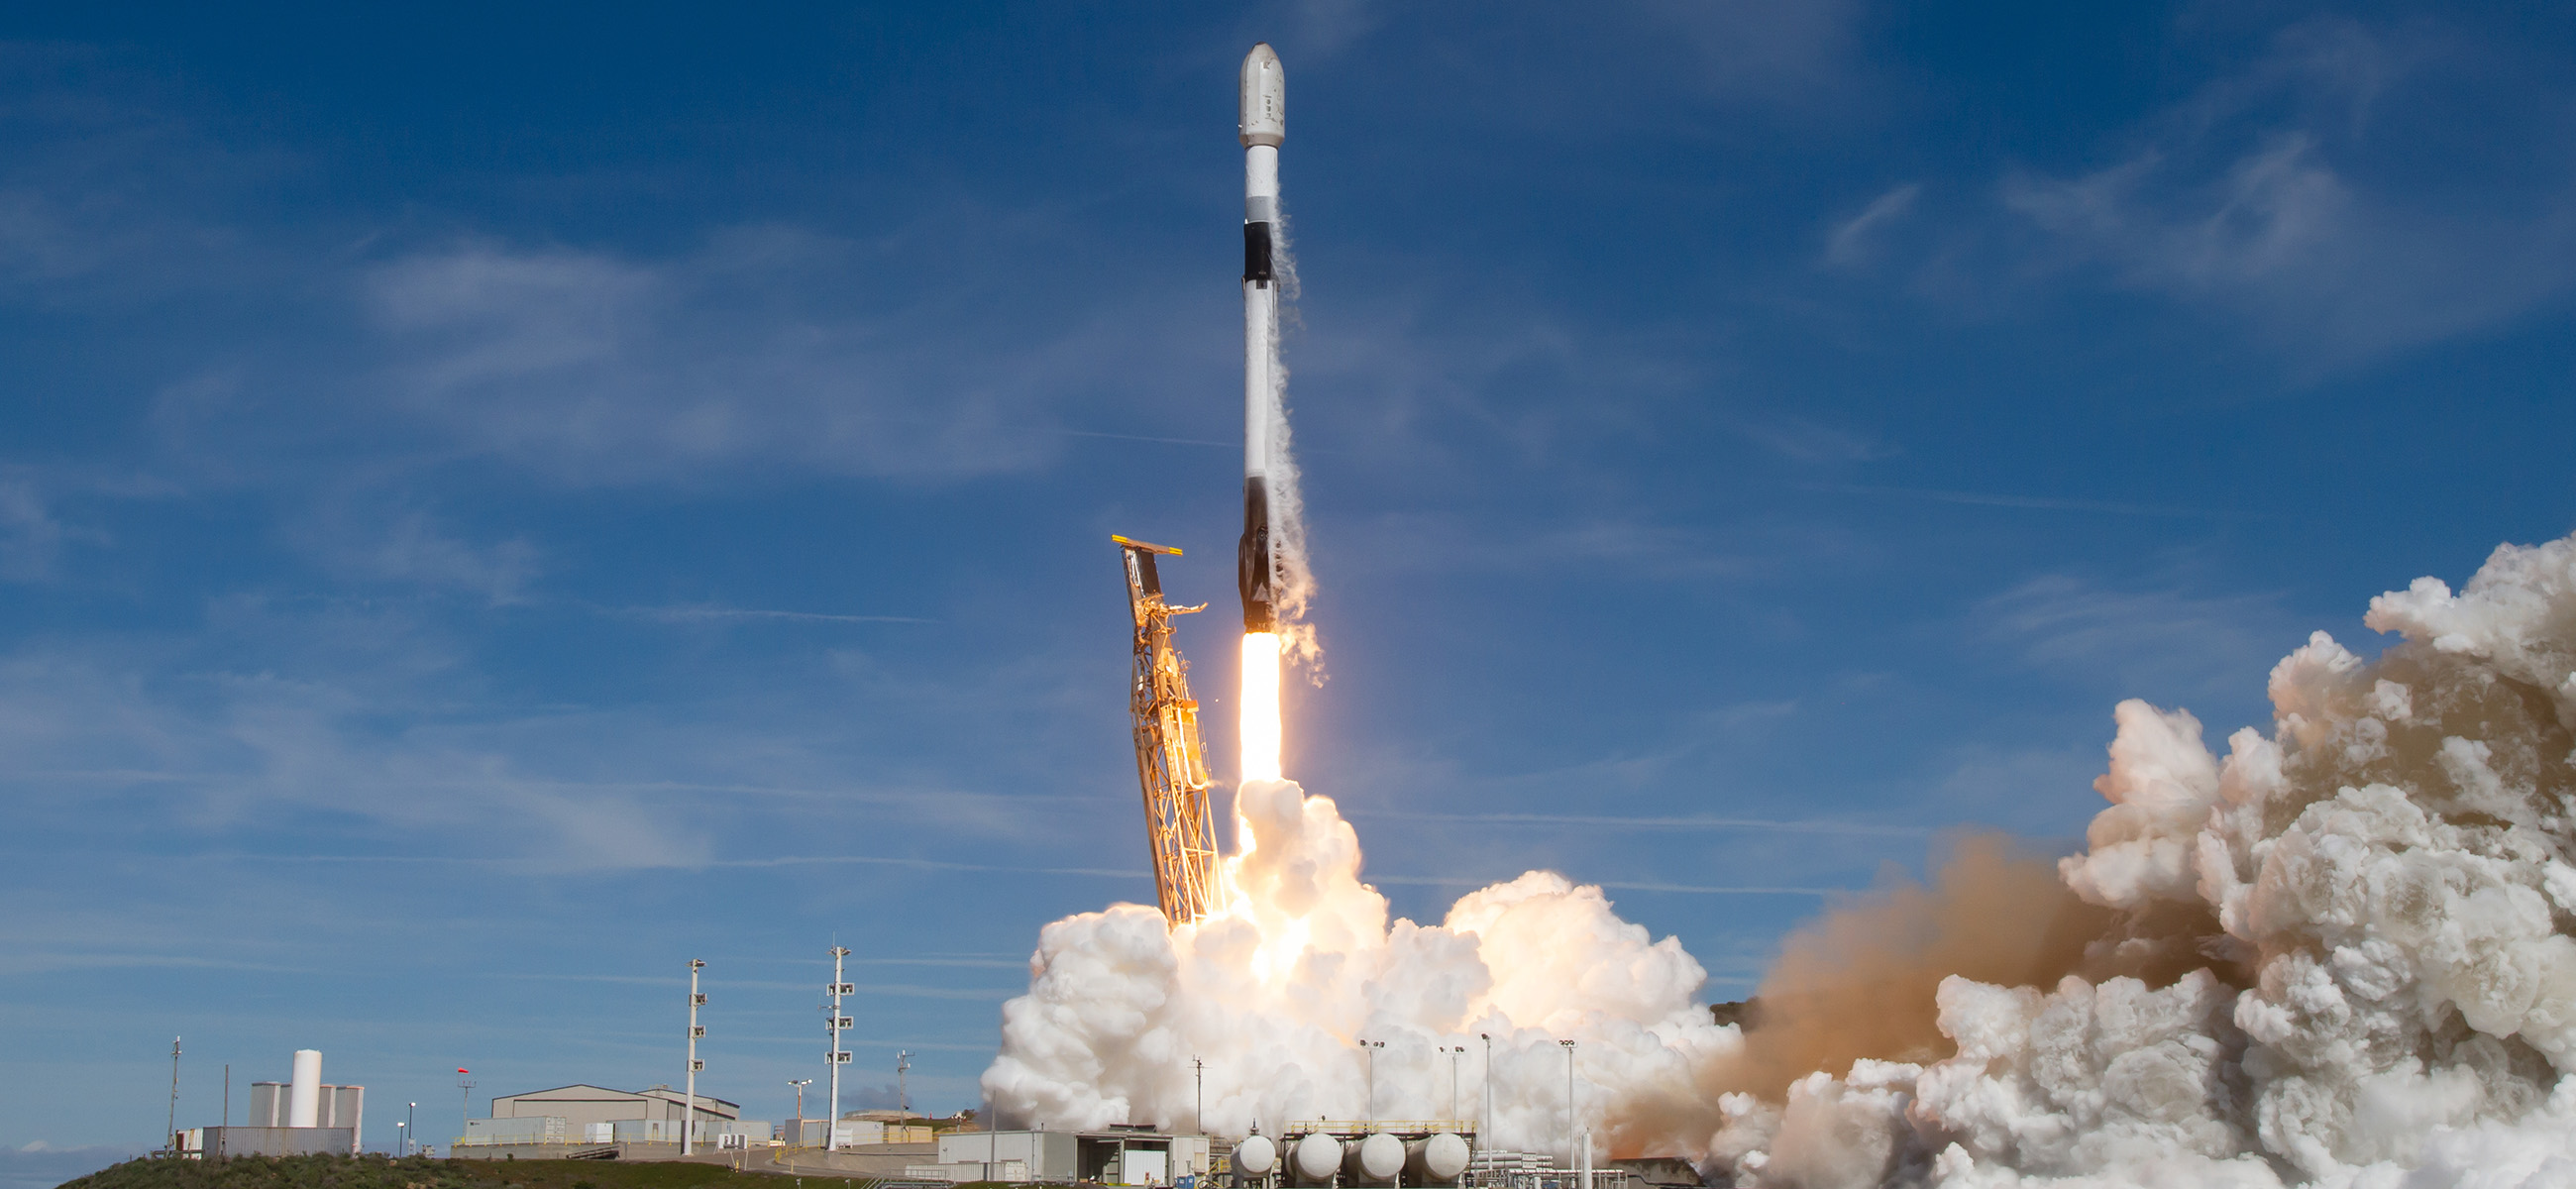 Décollage d'une fusée Falcon 9 de SpaceX. Le même jour qu'au déploiement des satellites Riri, Fifi, Loulou, SpaceX a opéré deux autres vols, dont un avec un nouvel équipage d'astronautes à destination de l'ISS. © SpaceX